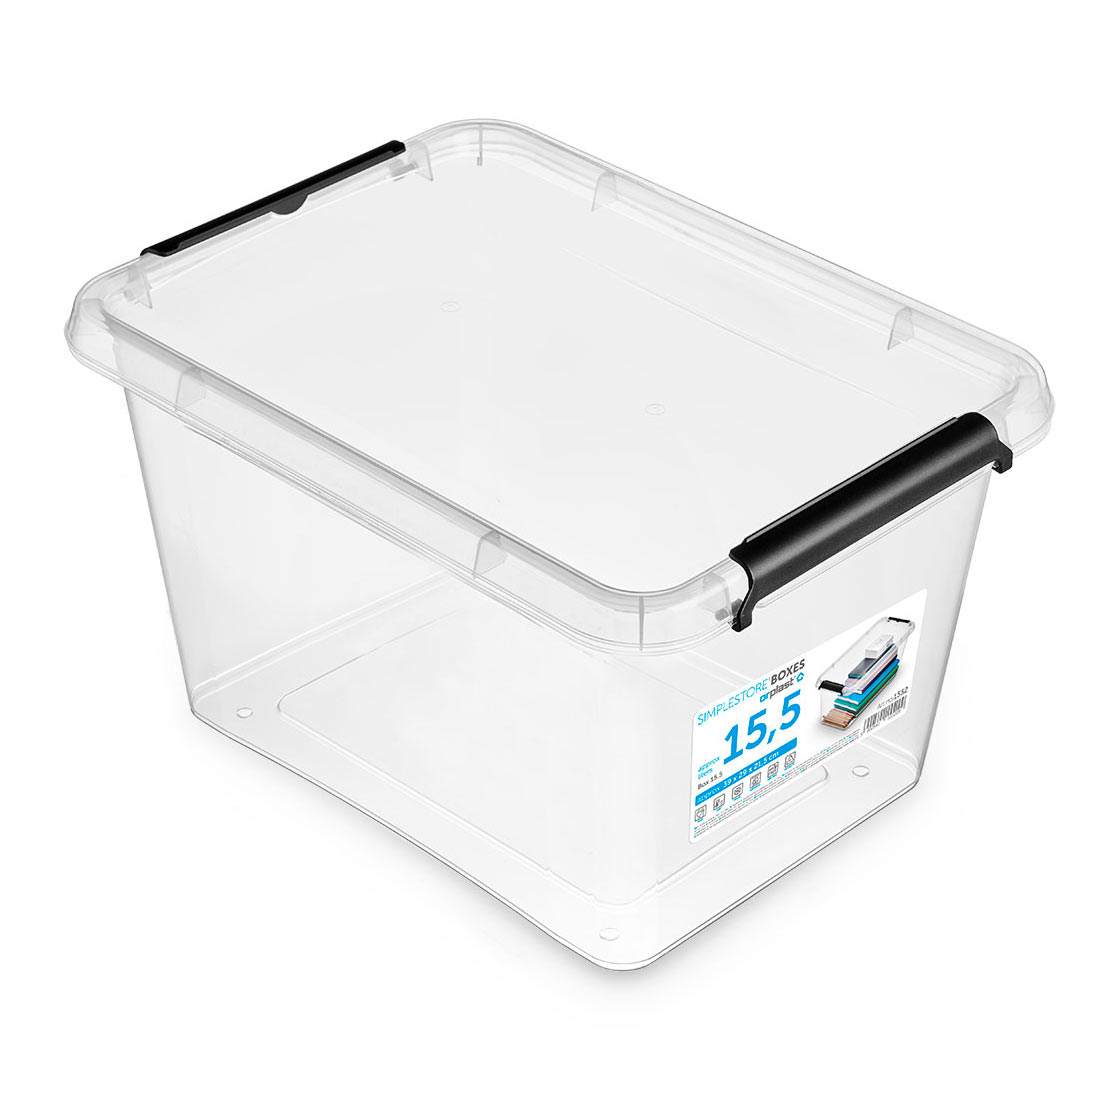 SimpleStore storage container 1552 Transparent